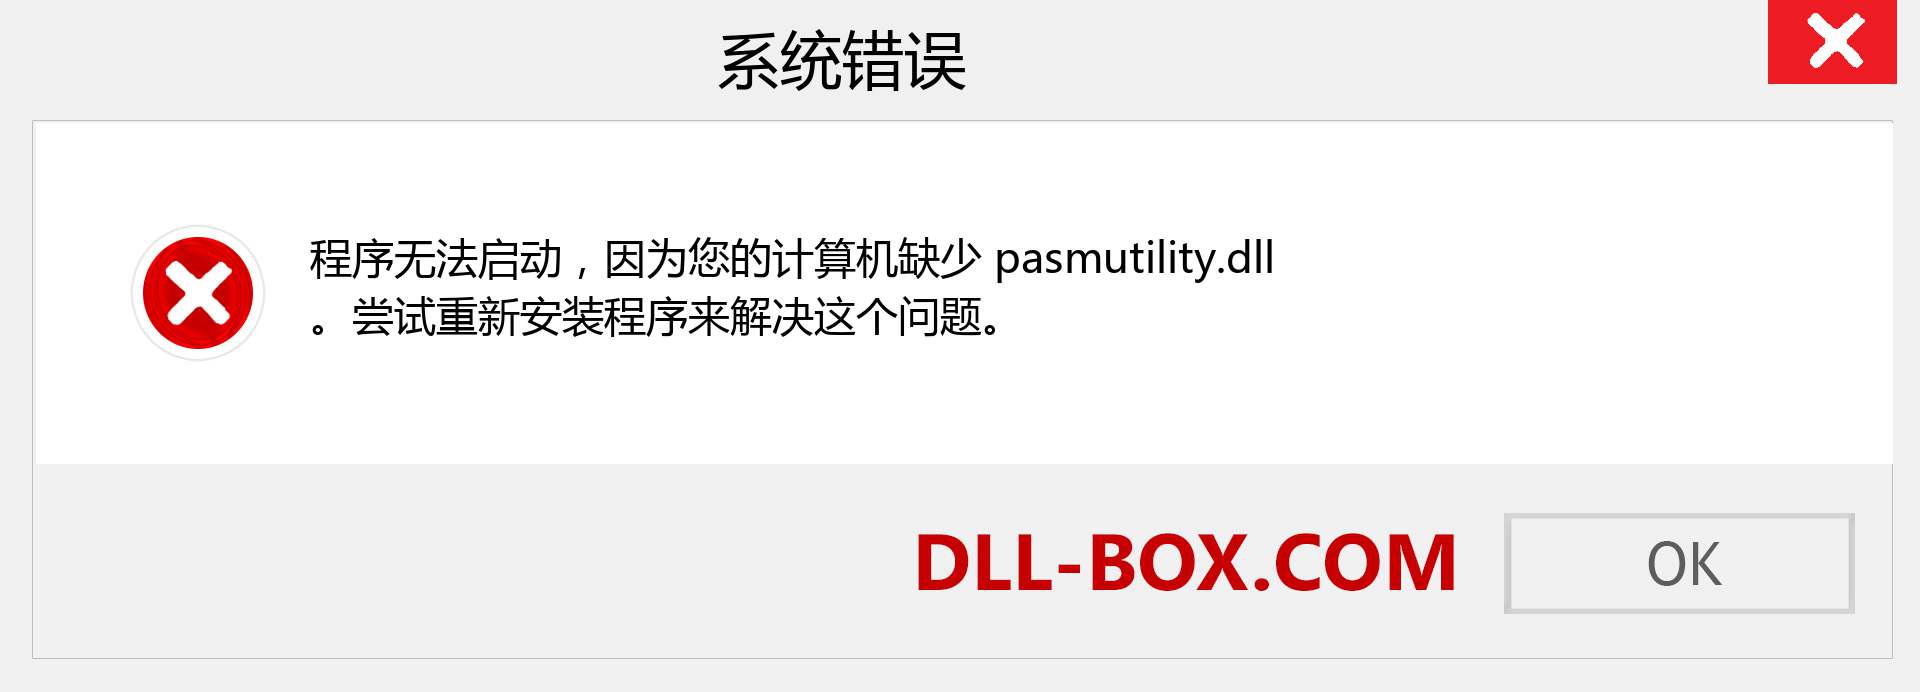 pasmutility.dll 文件丢失？。 适用于 Windows 7、8、10 的下载 - 修复 Windows、照片、图像上的 pasmutility dll 丢失错误